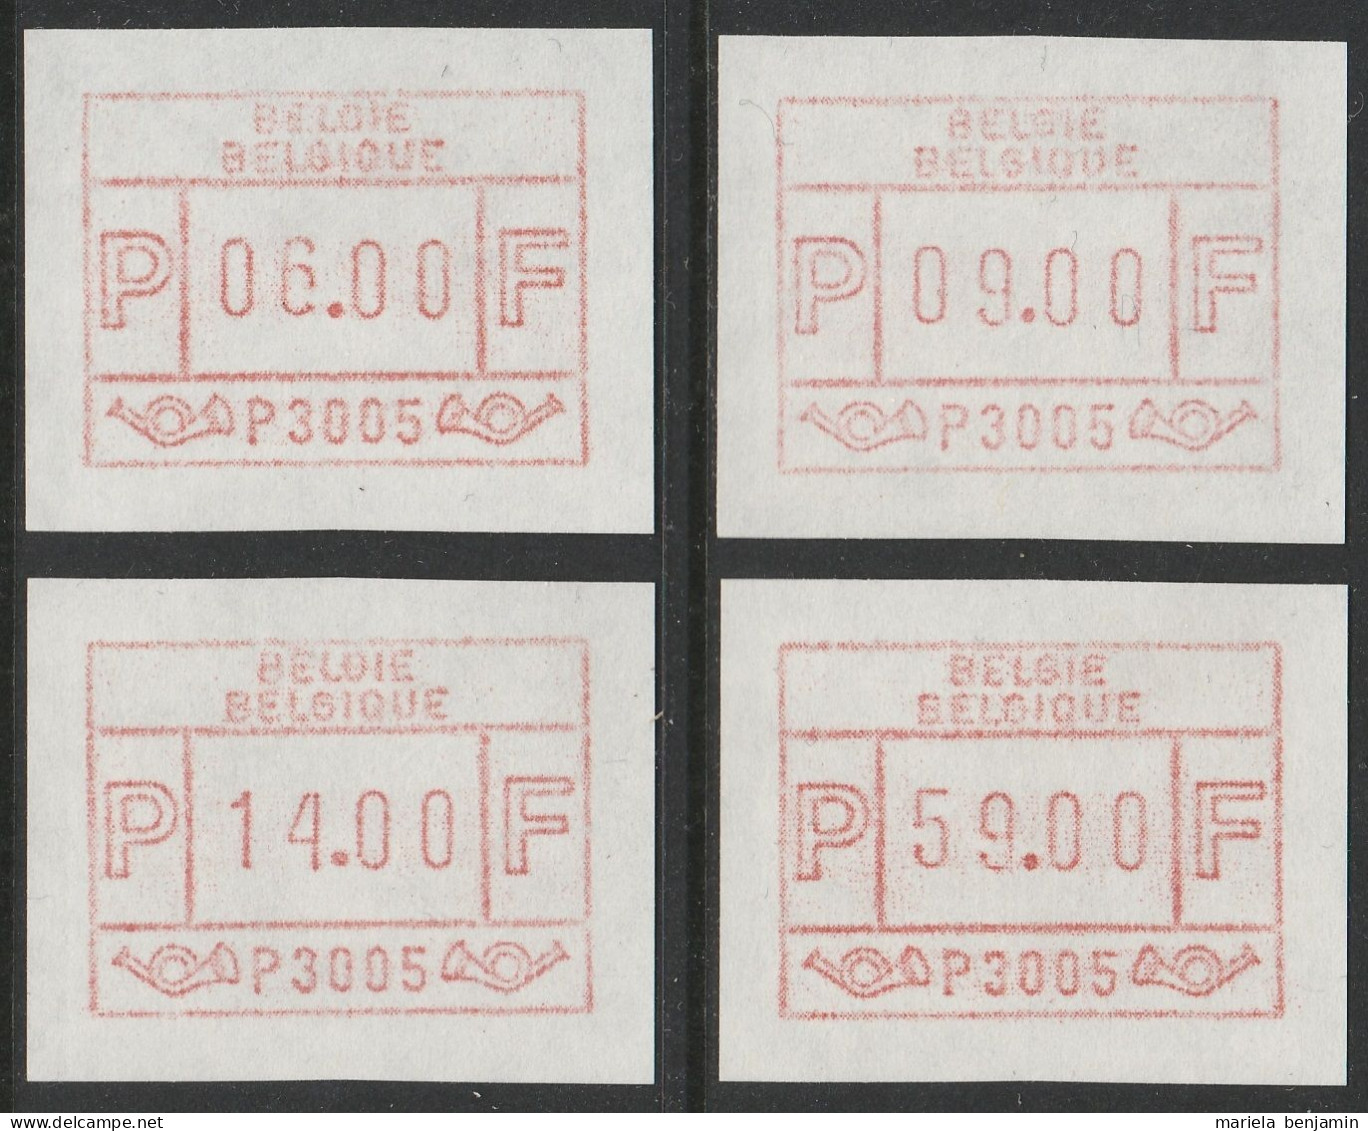 Belgique - Timbres ATM5 Bruxelles Série Des 4 Valeurs (6-9-14-59f) ** - 1980-1999